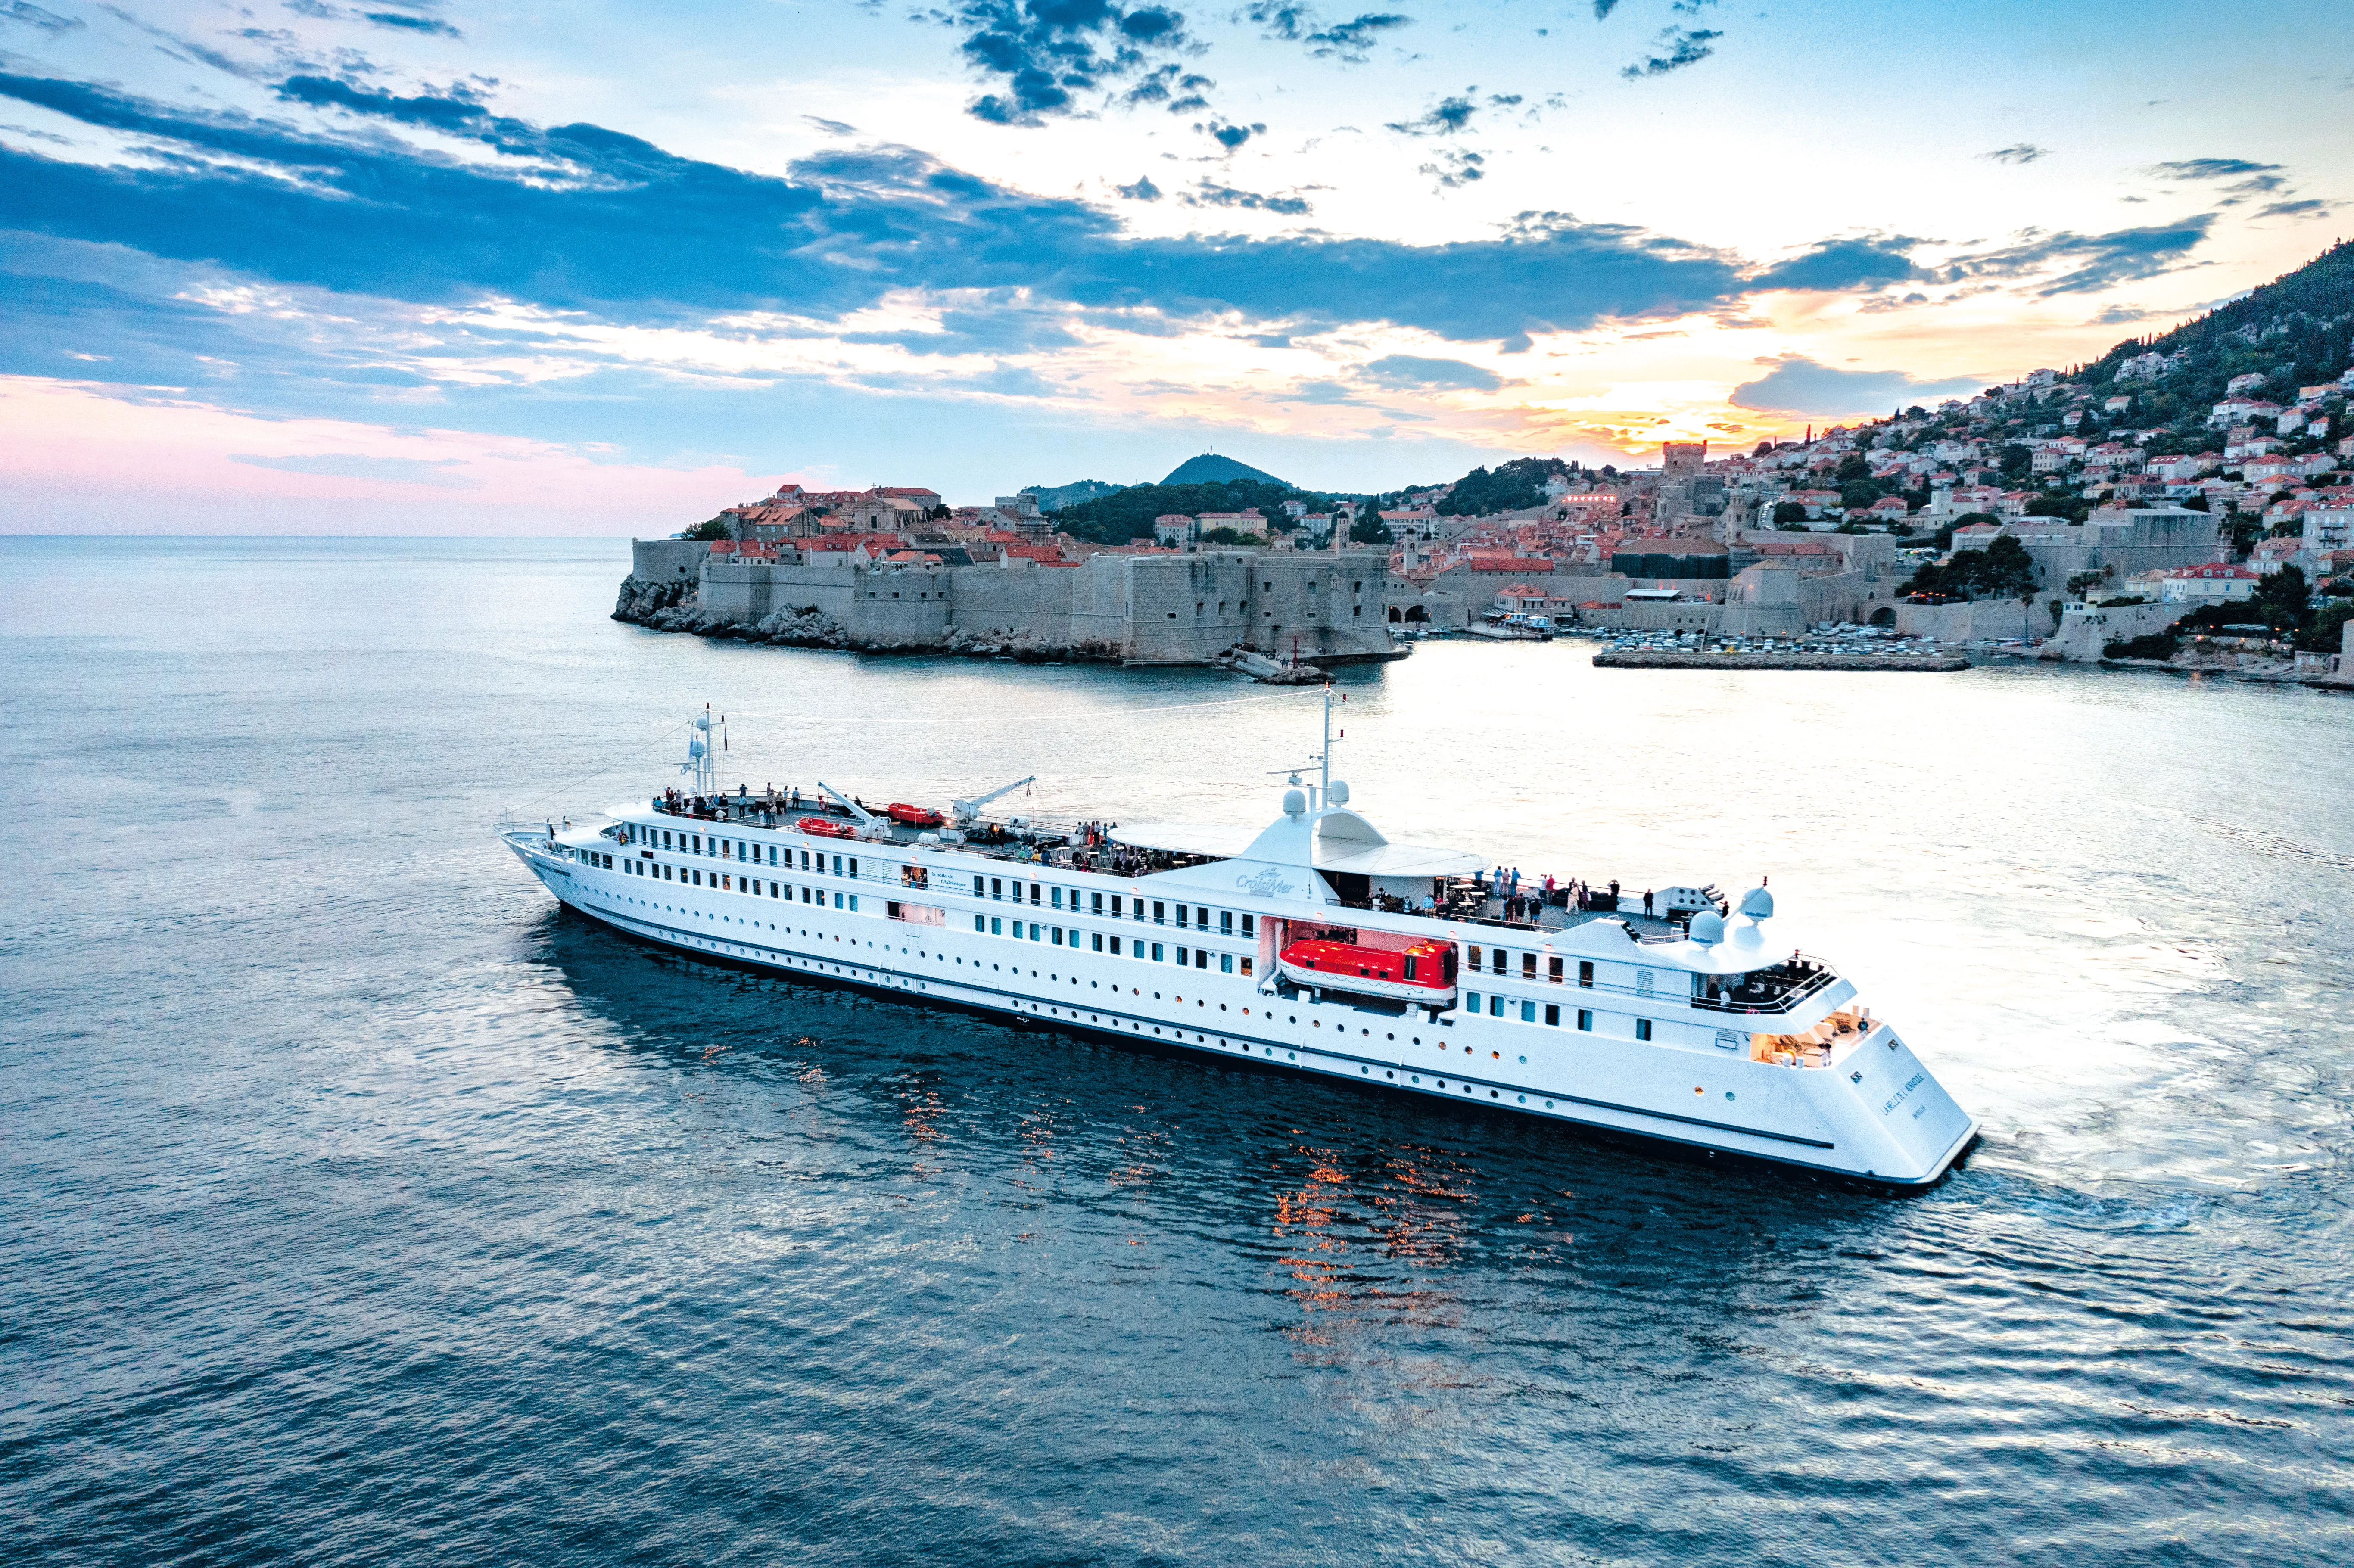 La Belle de l'Adriatique naviguant près de Dubrovnik 